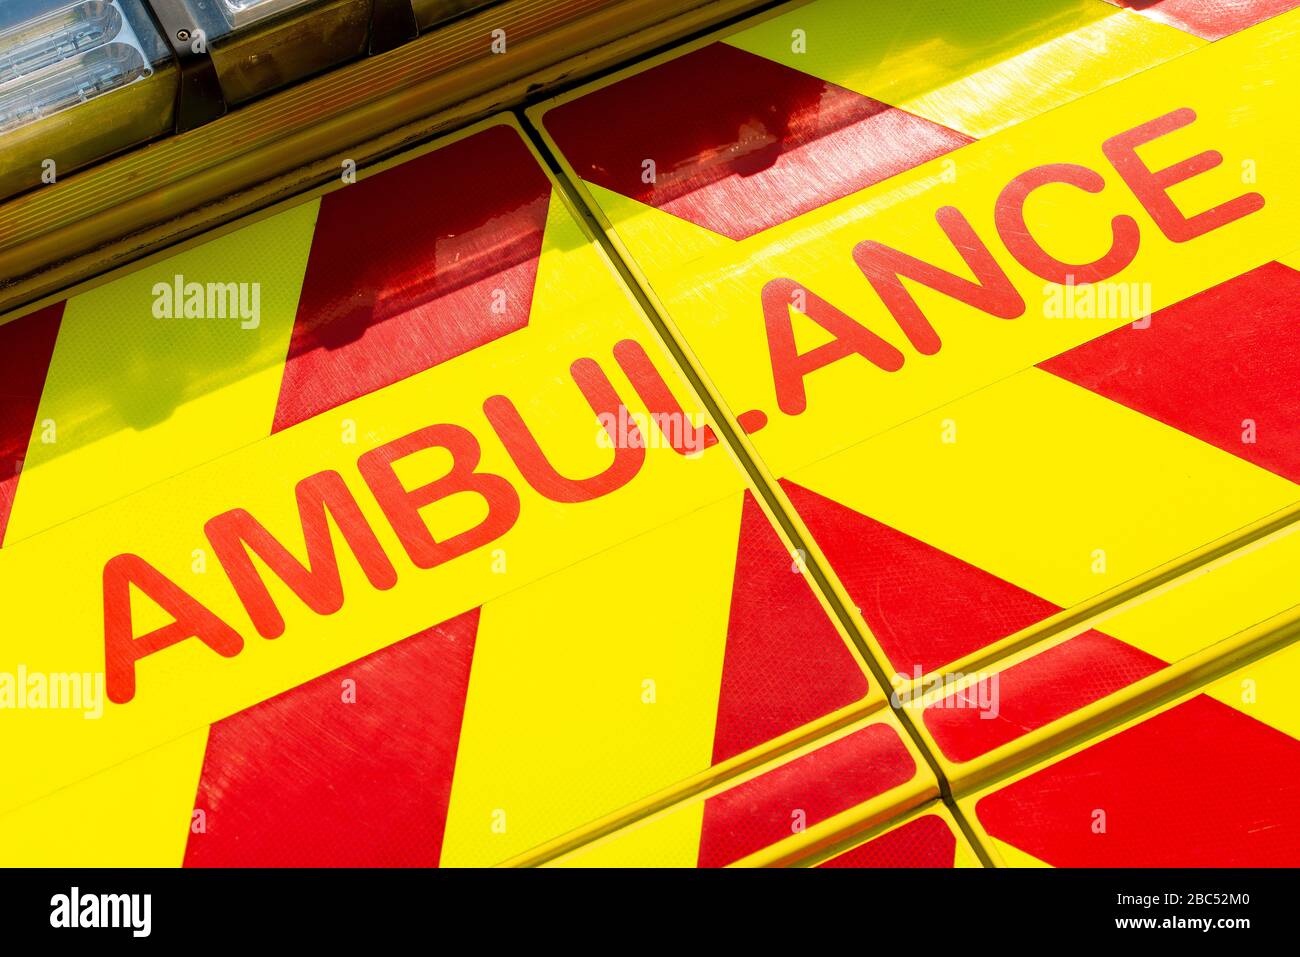 Espectacular vista en ángulo bajo de la señal DE AMBULANCIA en el vehículo médico de respuesta de emergencia NHS rojo y amarillo. Foto de stock